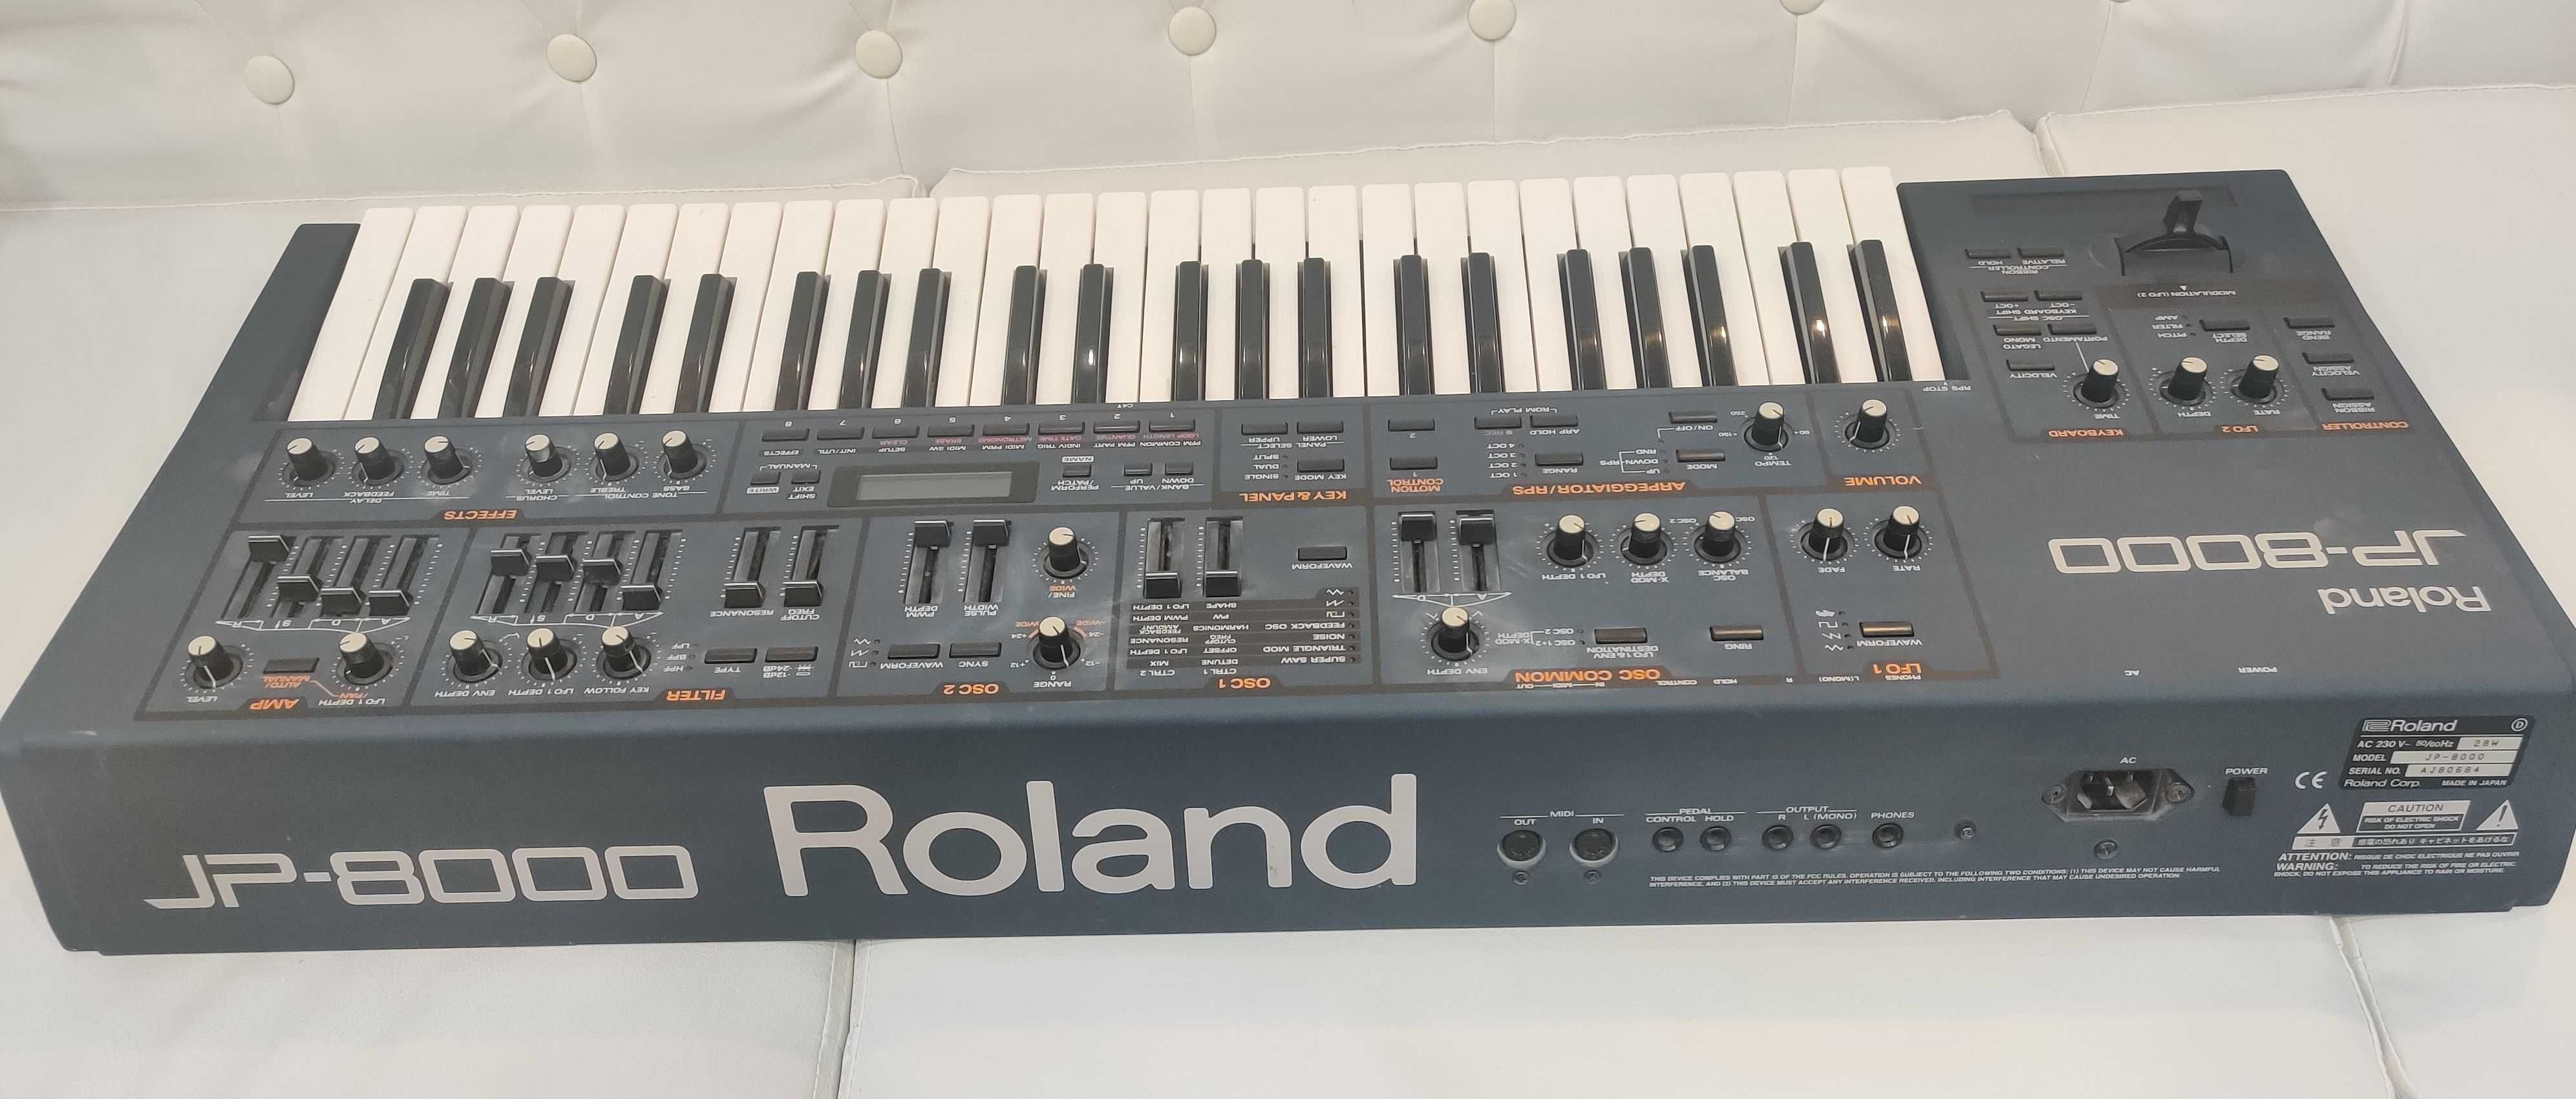 Clapa Roland JP-8000